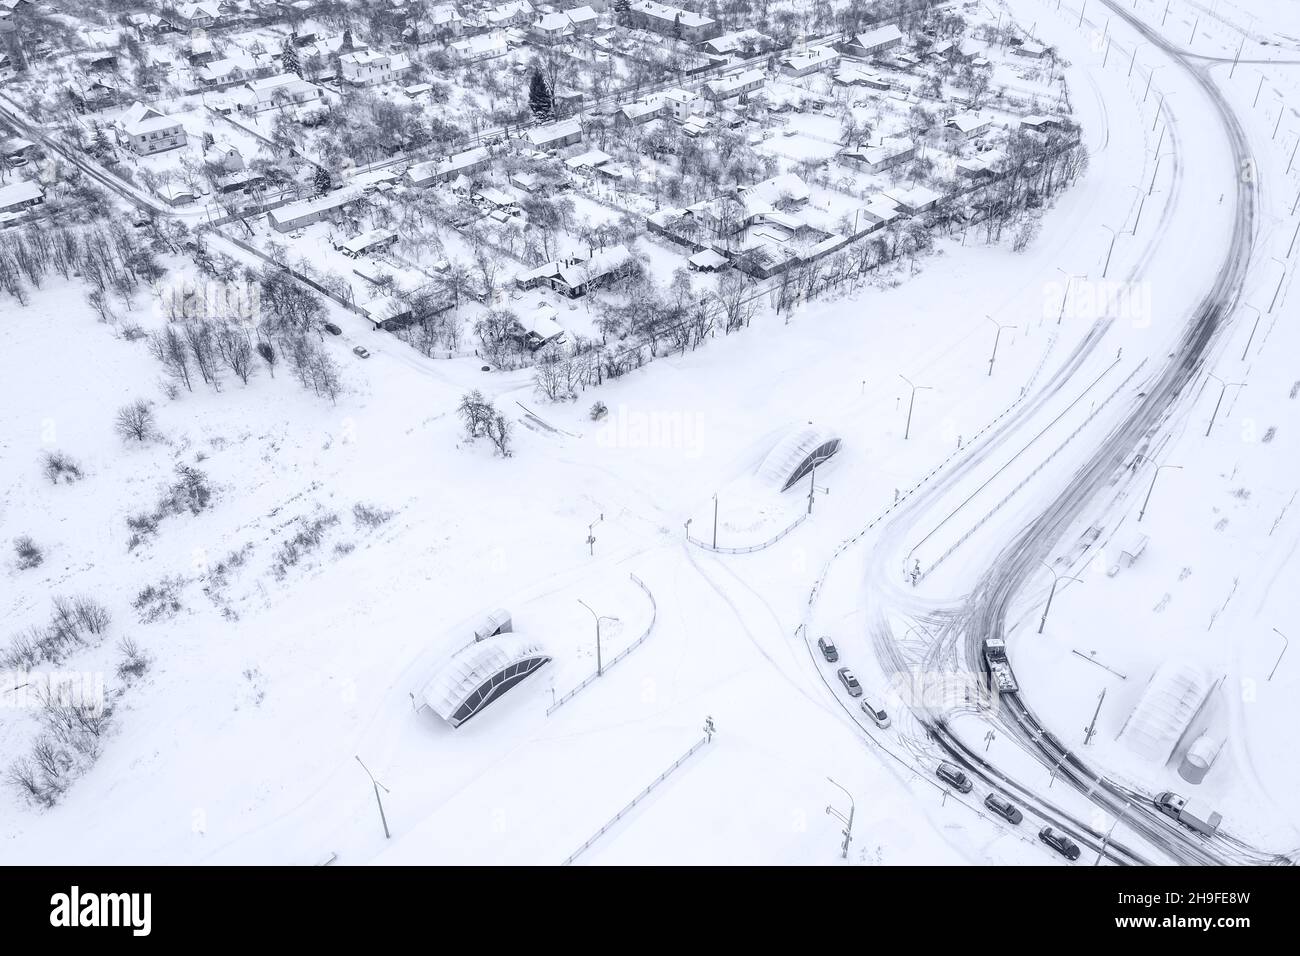 quartier résidentiel de banlieue avec maisons enneigées et arbres en hiver. photo de drone aérien. Banque D'Images